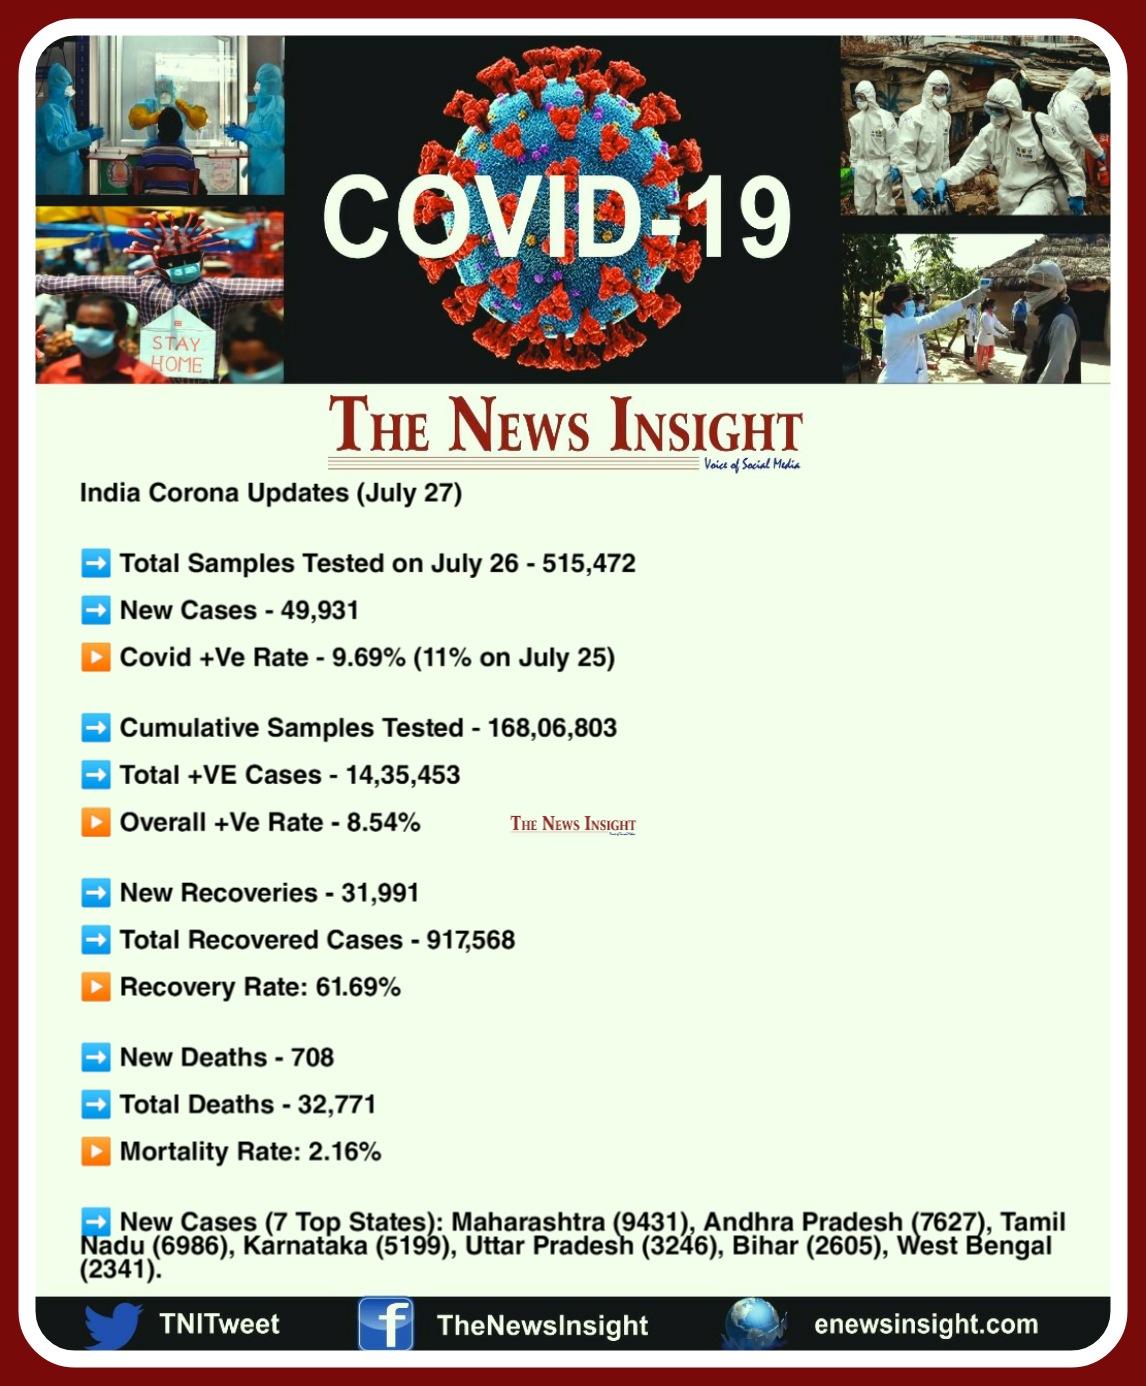 India COVID-19 Updates